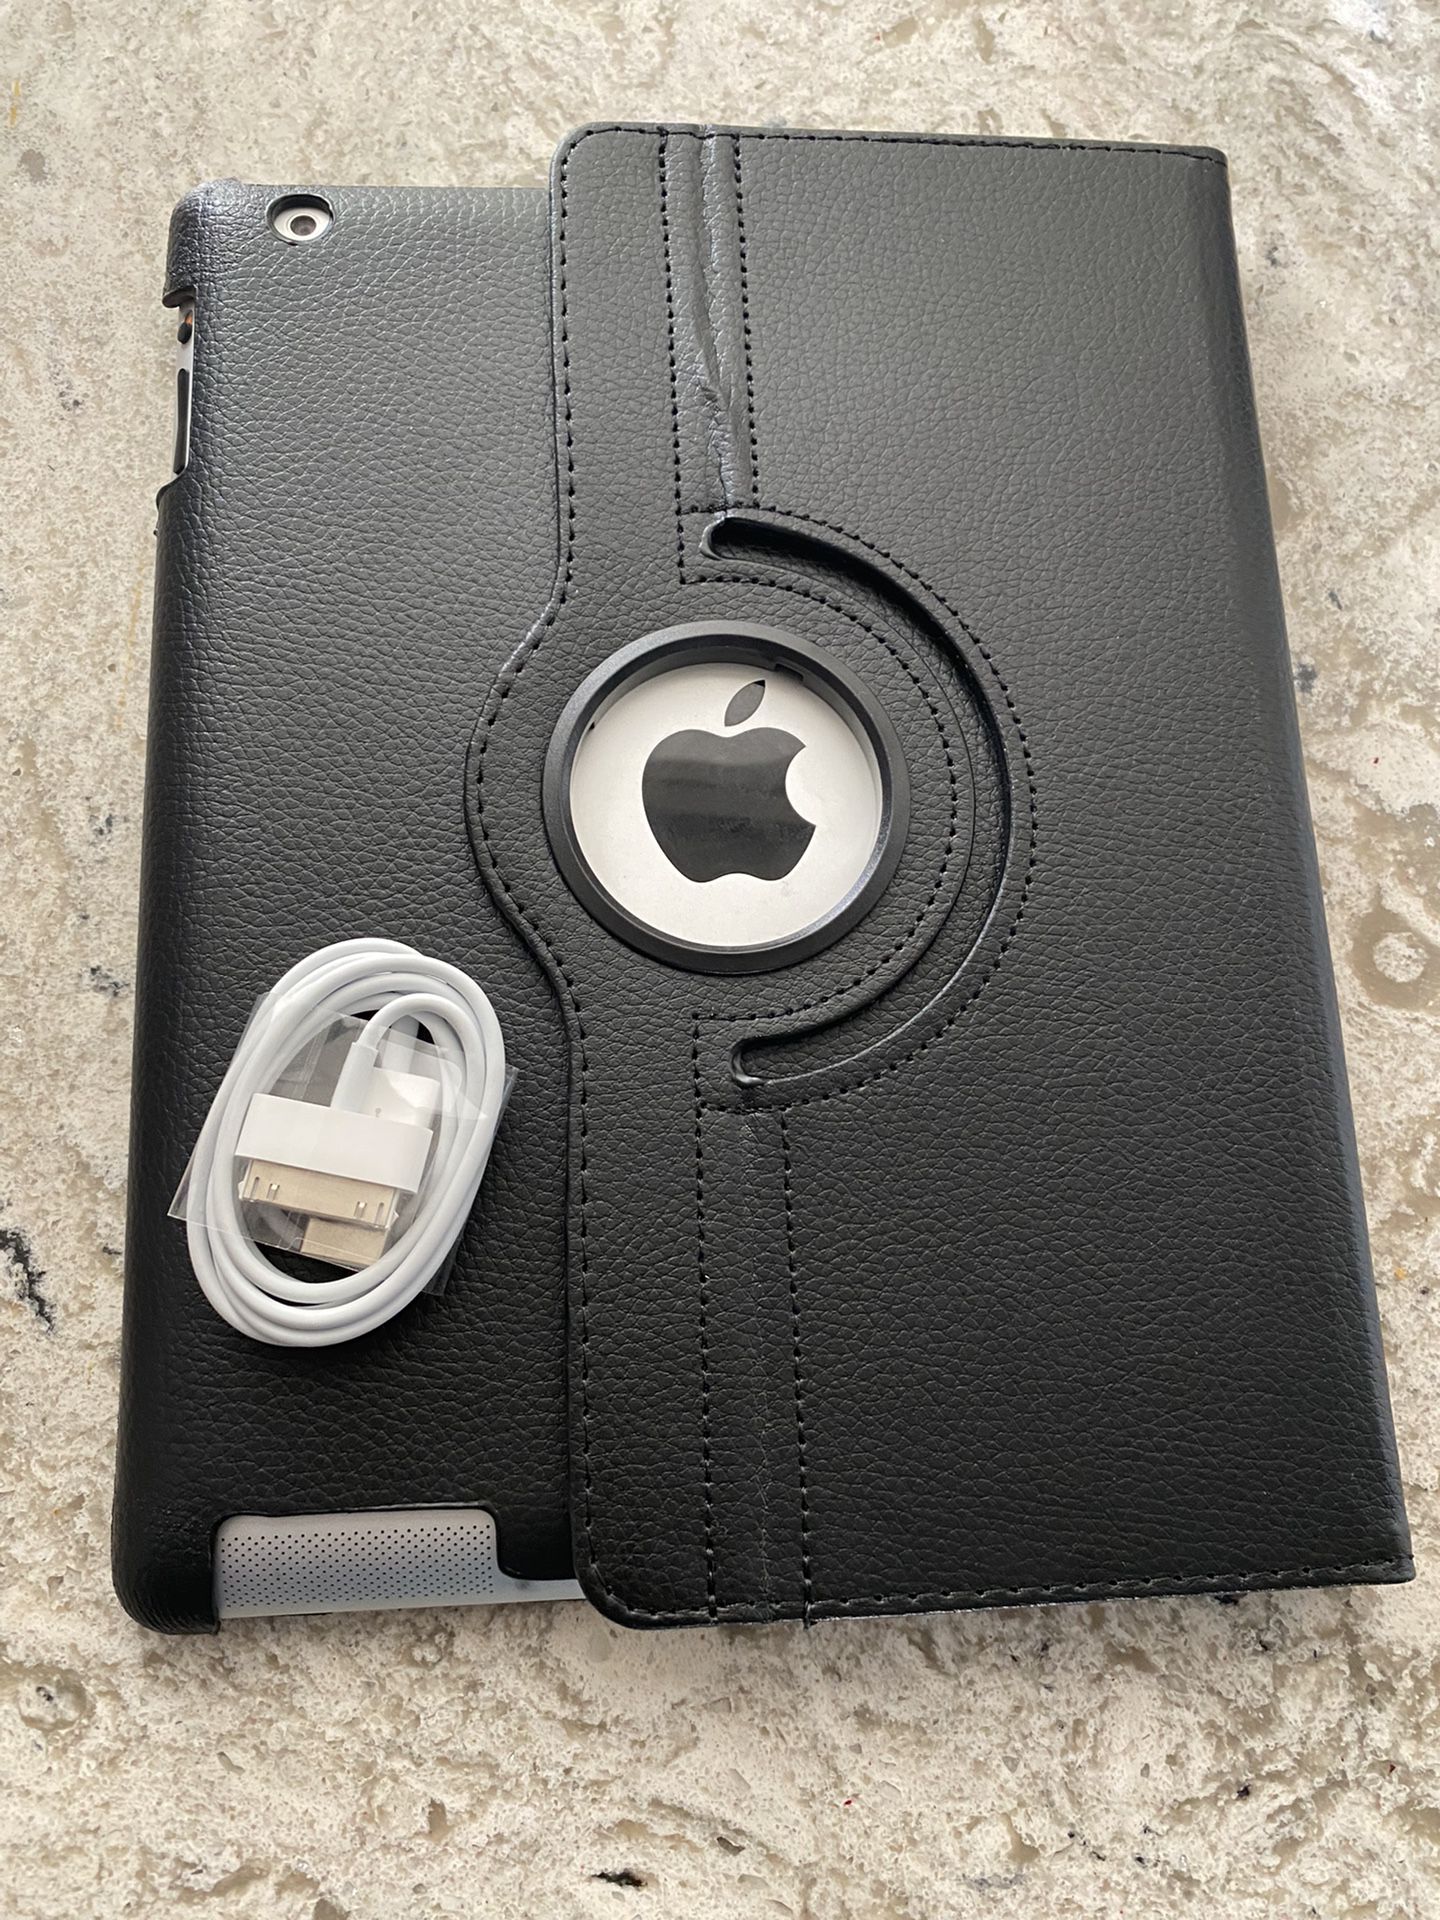 Apple Ioad -2 iCloud Unlocked -16 GB